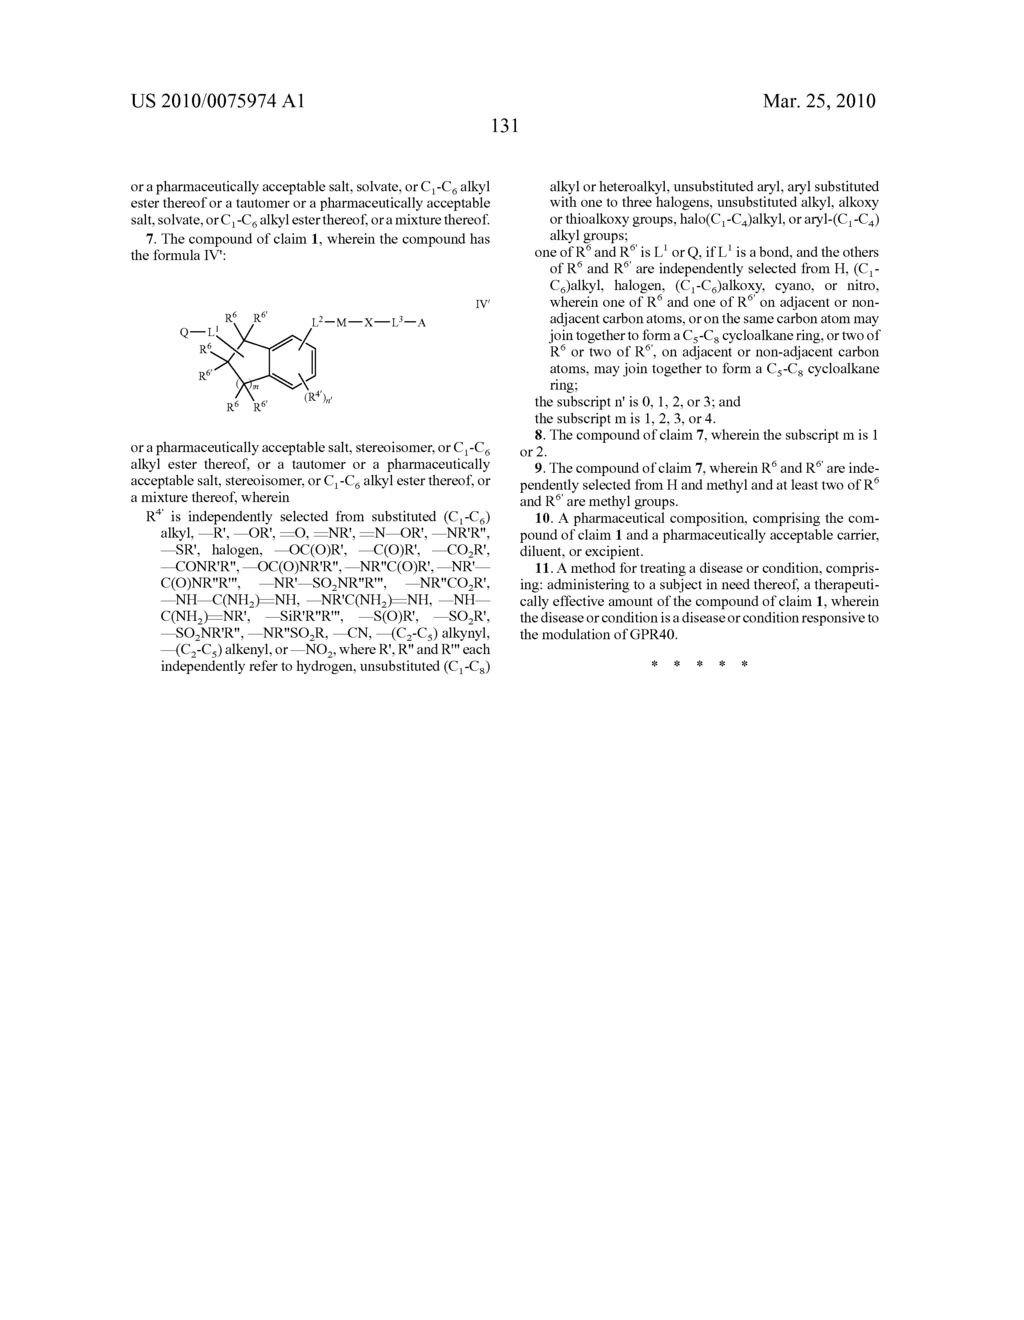 HETEROCYCLIC GPR40 MODULATORS - diagram, schematic, and image 132